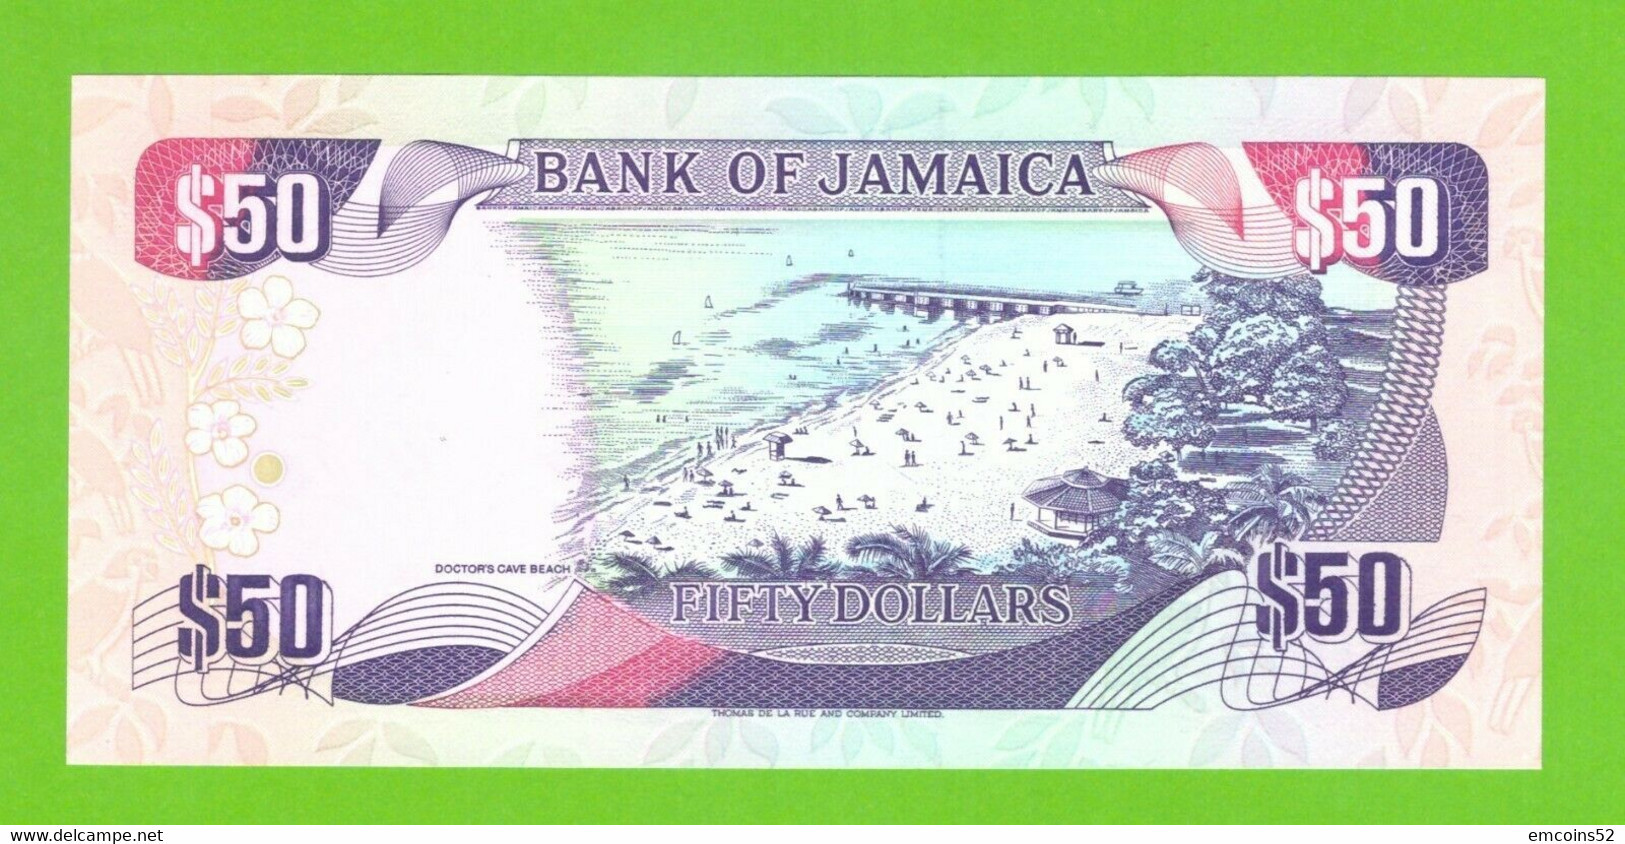 JAMAICA 50 DOLLARS 1995  P-73c  UNC - Jamaica